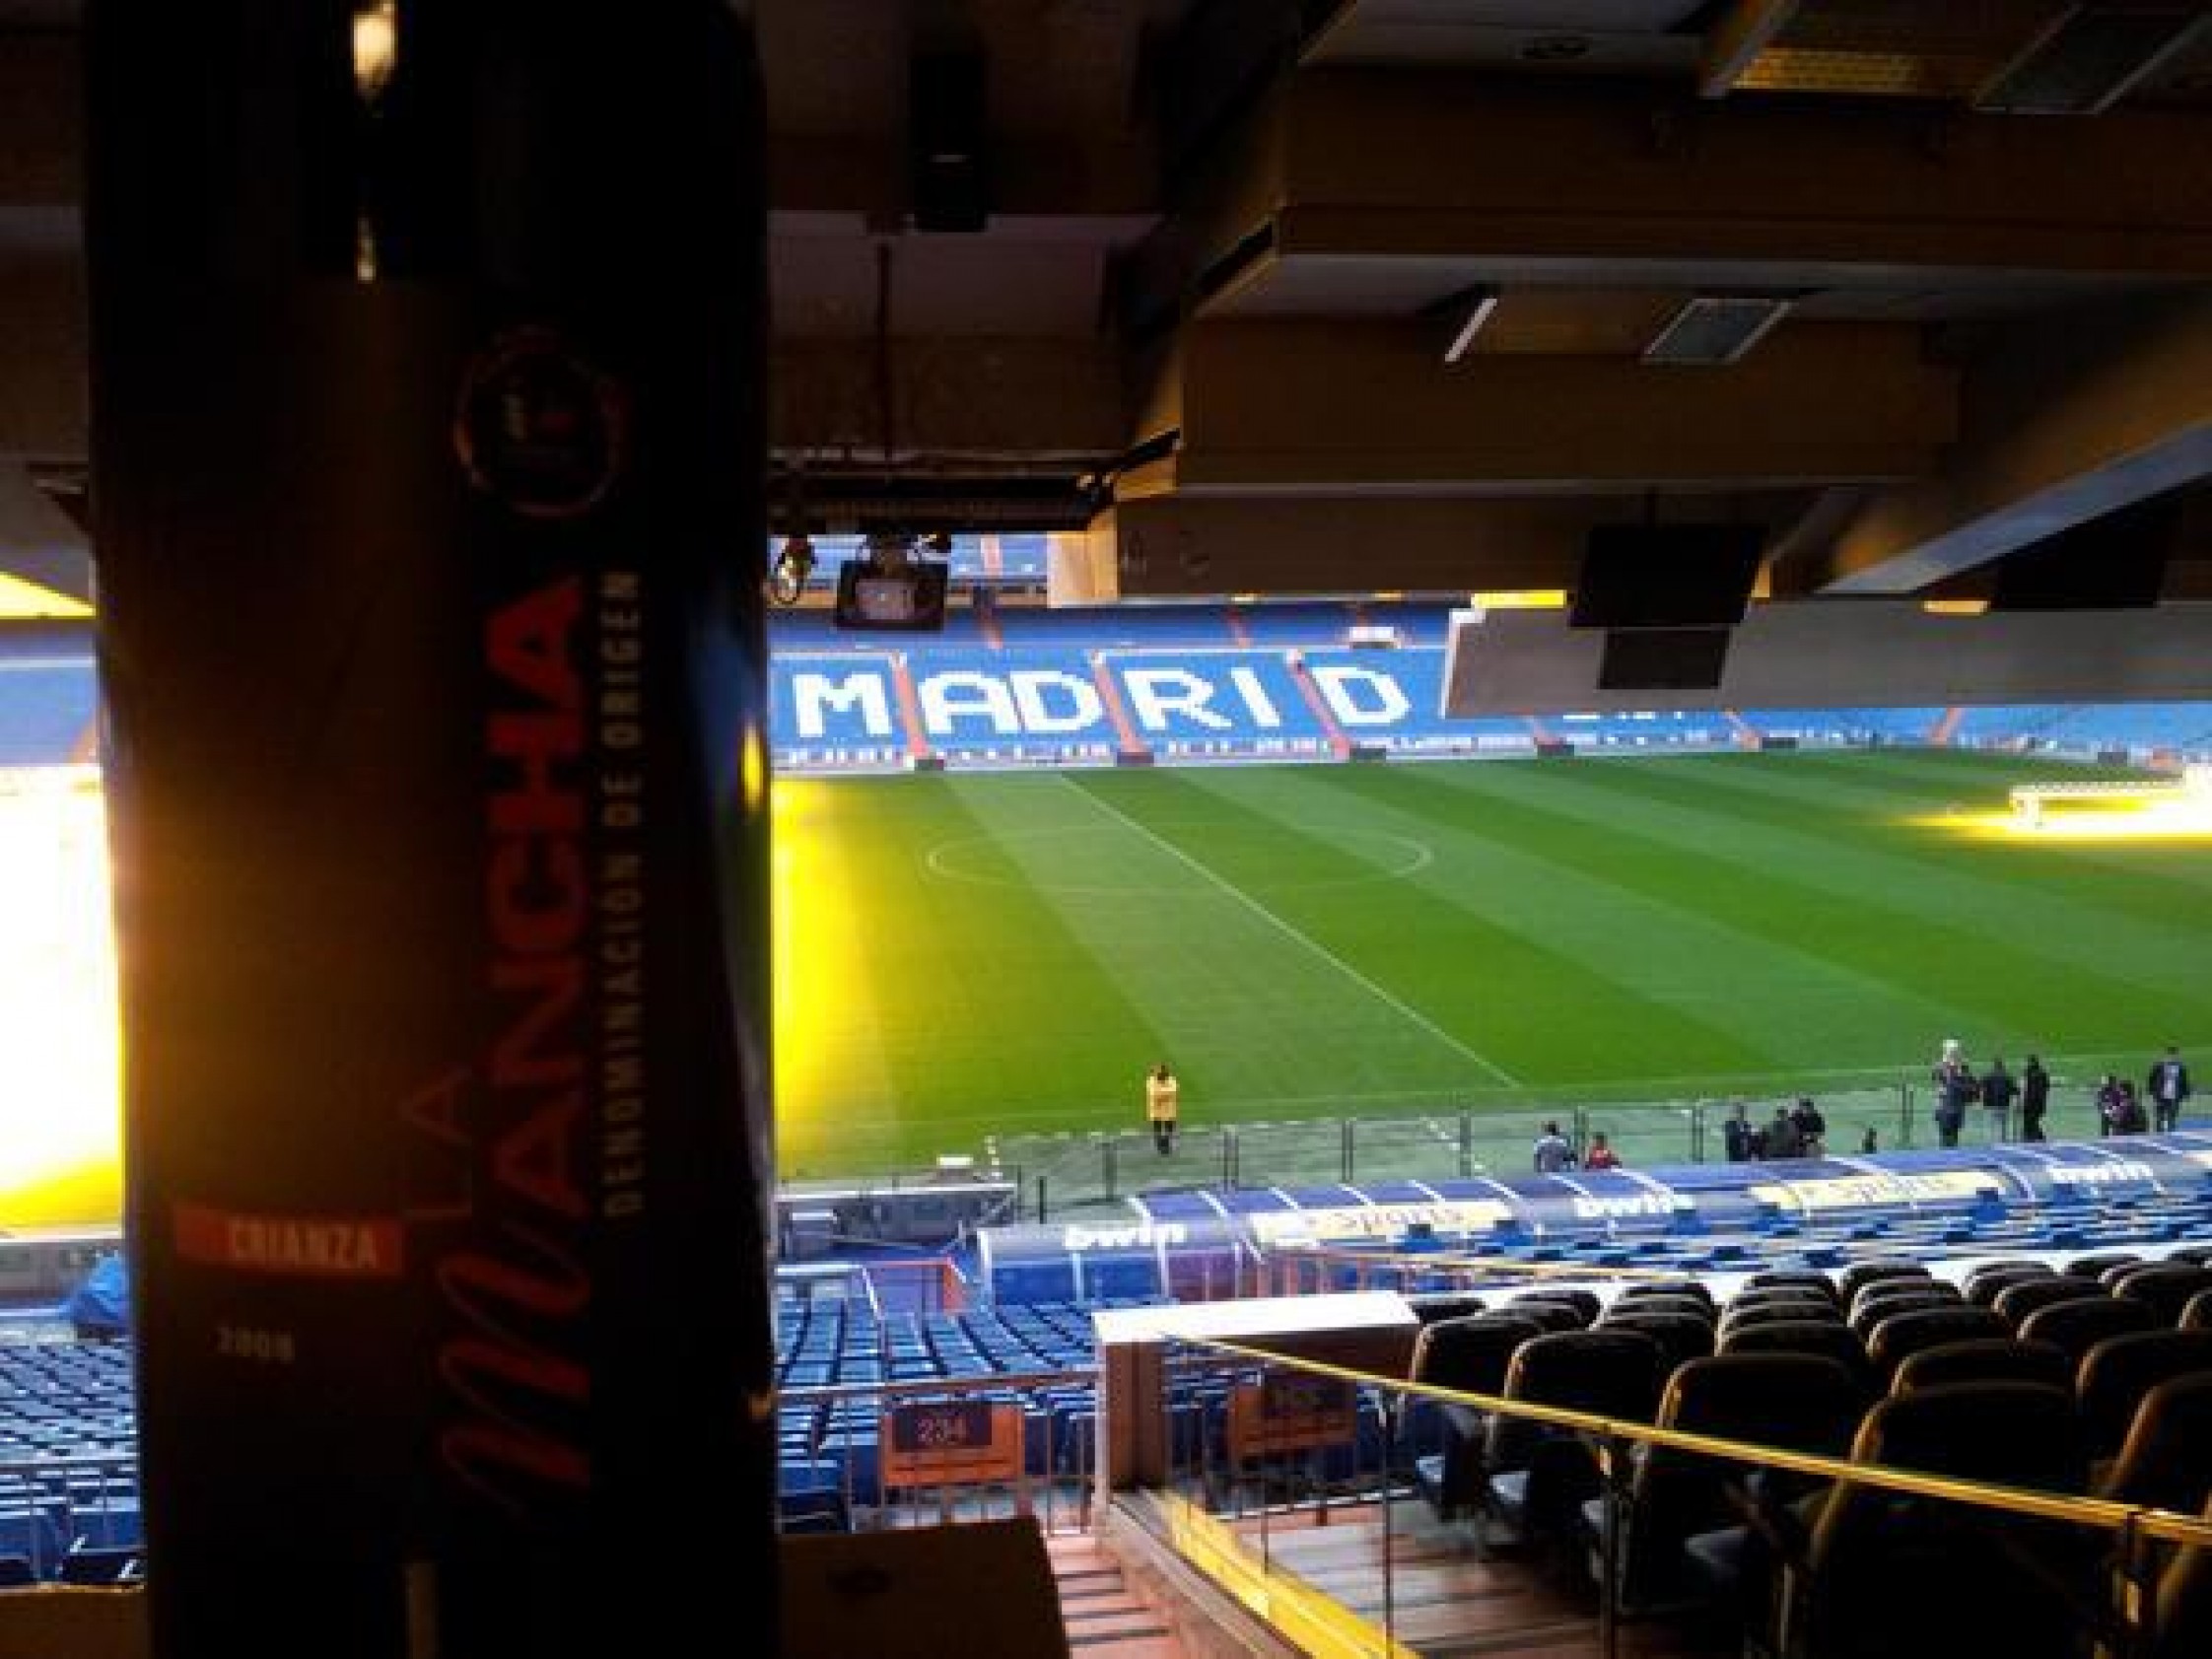 La cantera de los vinos DO La Mancha, triunfan en el Bernabéu